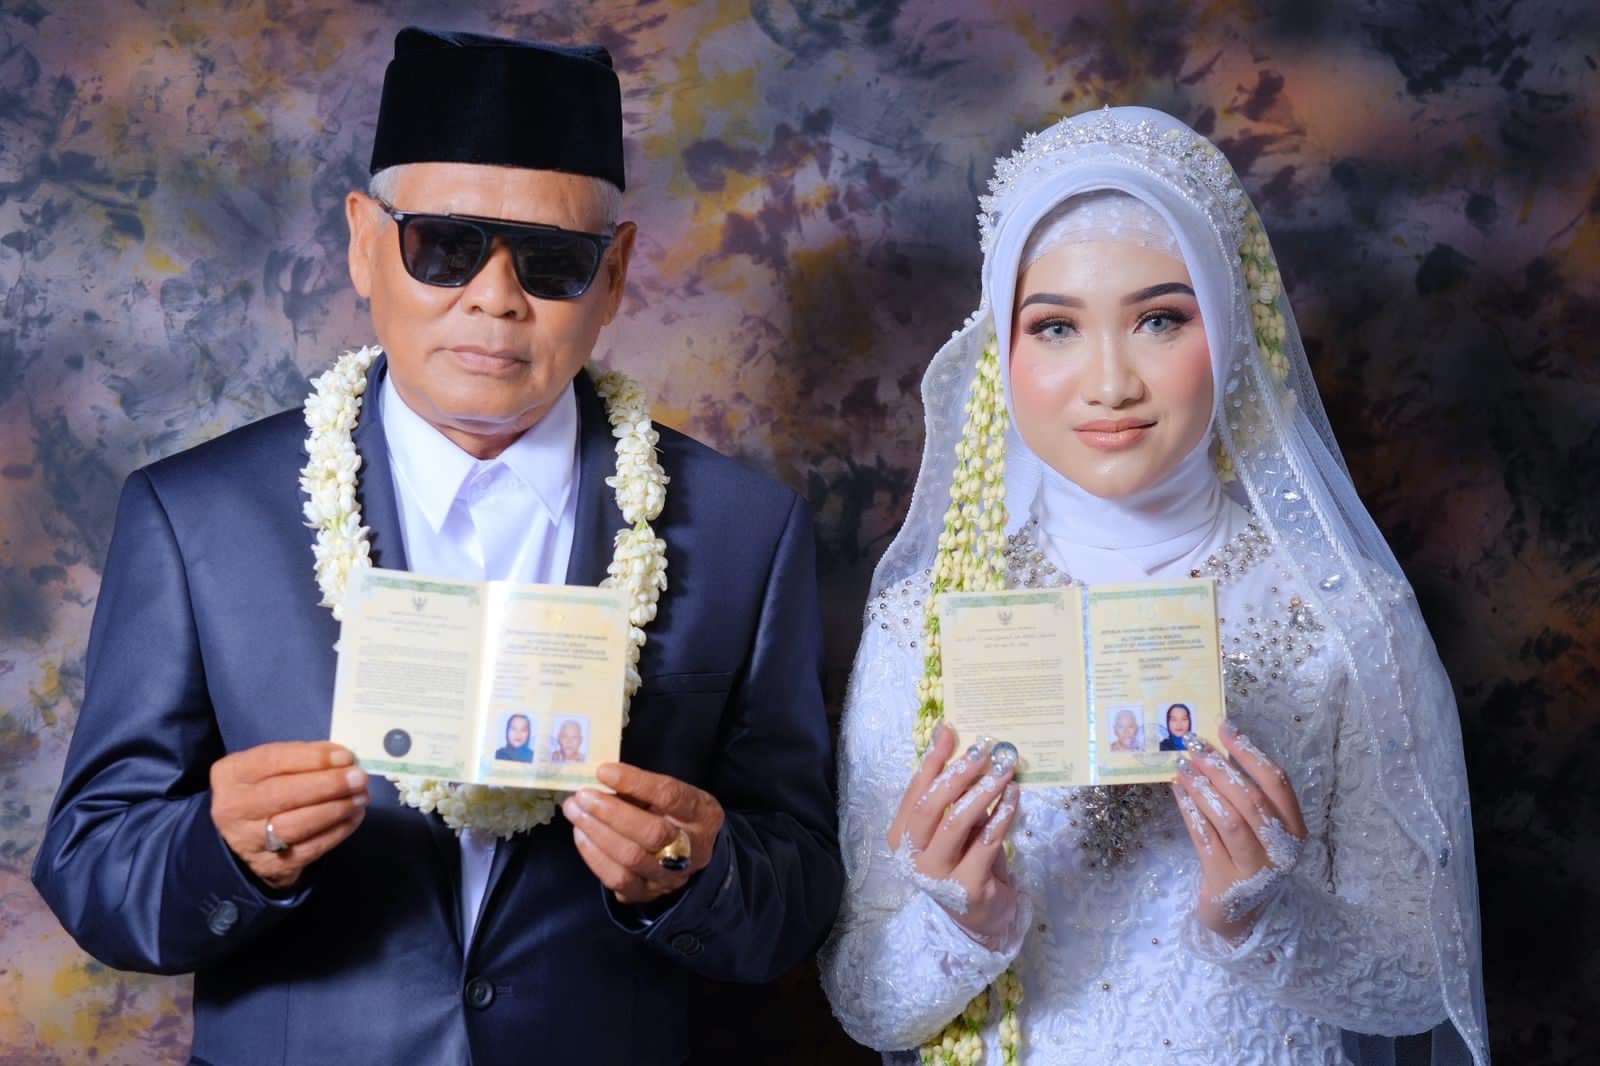 Fia Barlanti, gadis 19 tahun yang nikah dengan H Sondani, kakek berusia 63 tahun asal Cirebon. (Facebook/Nuna Lee)